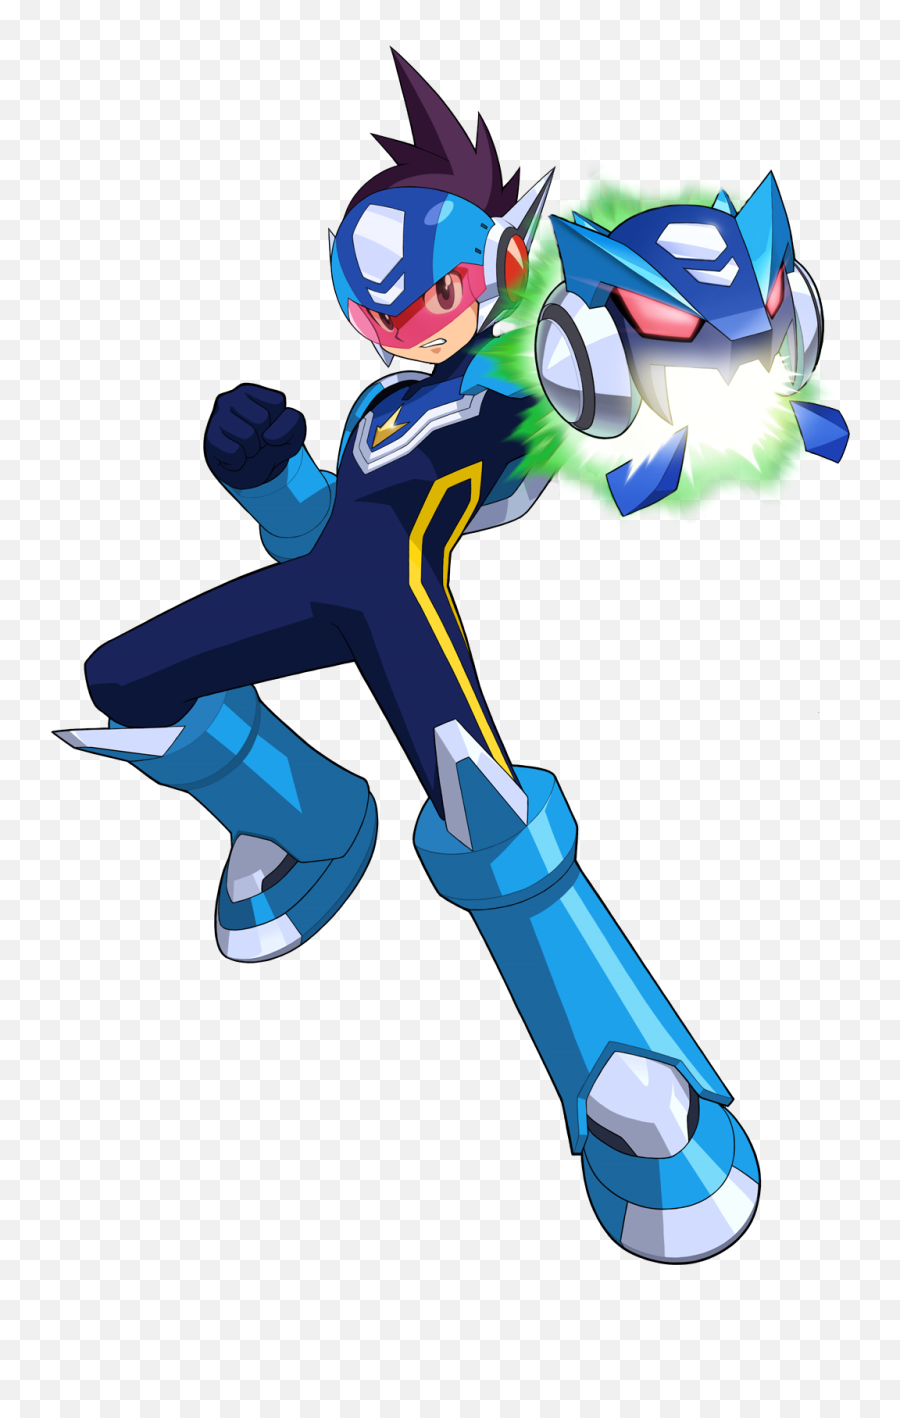 Star Force Mega Man - Star Force Mega Man Png,Mega Man Png